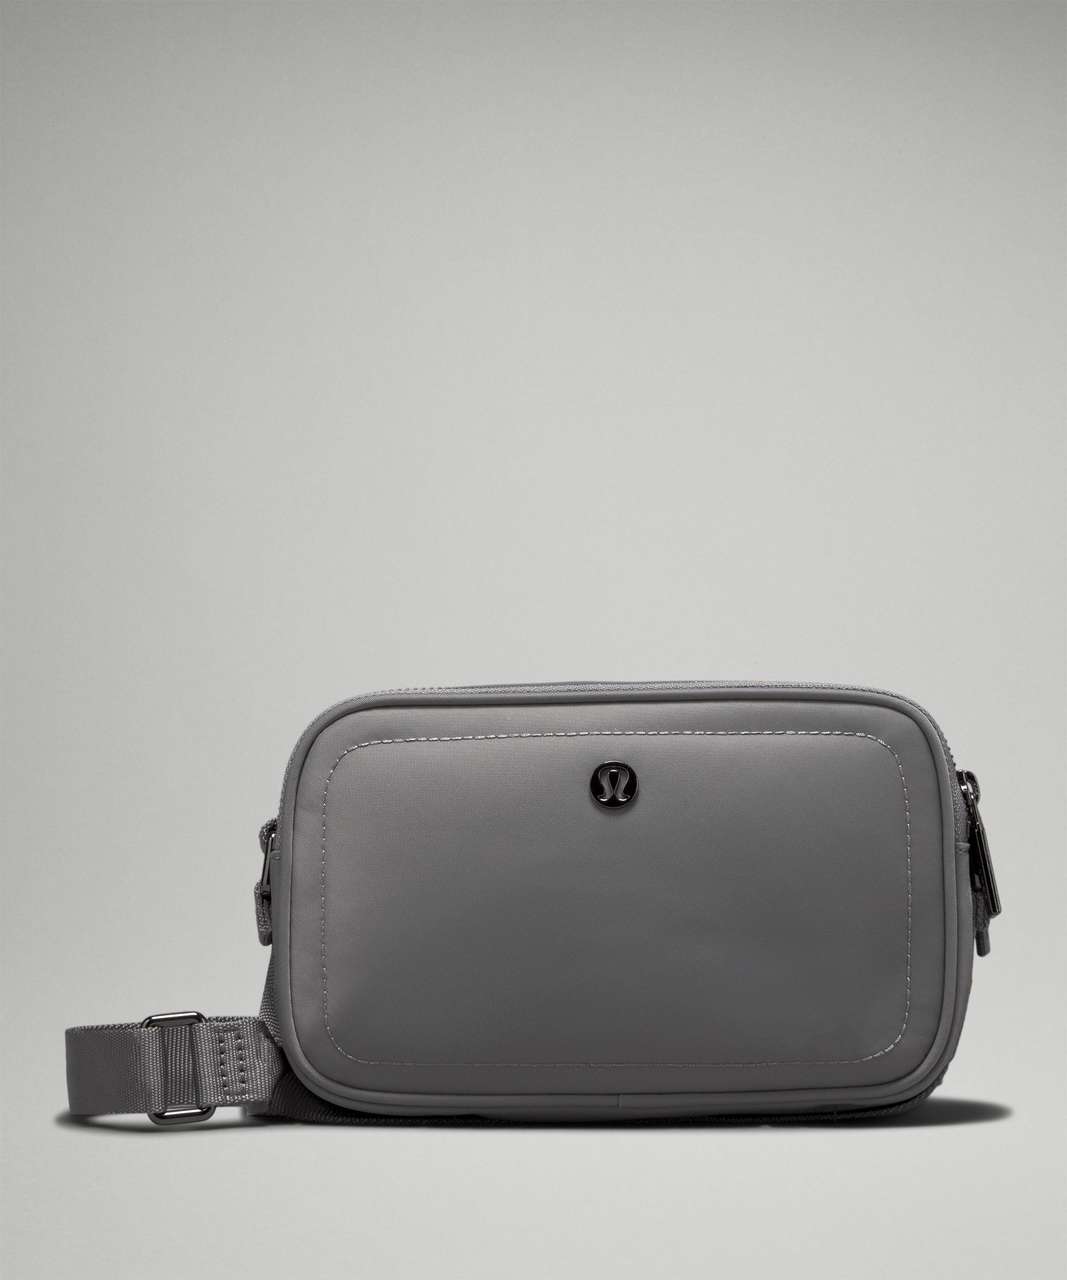 Lululemon Crossbody Camera Bag 2L - Asphalt Grey